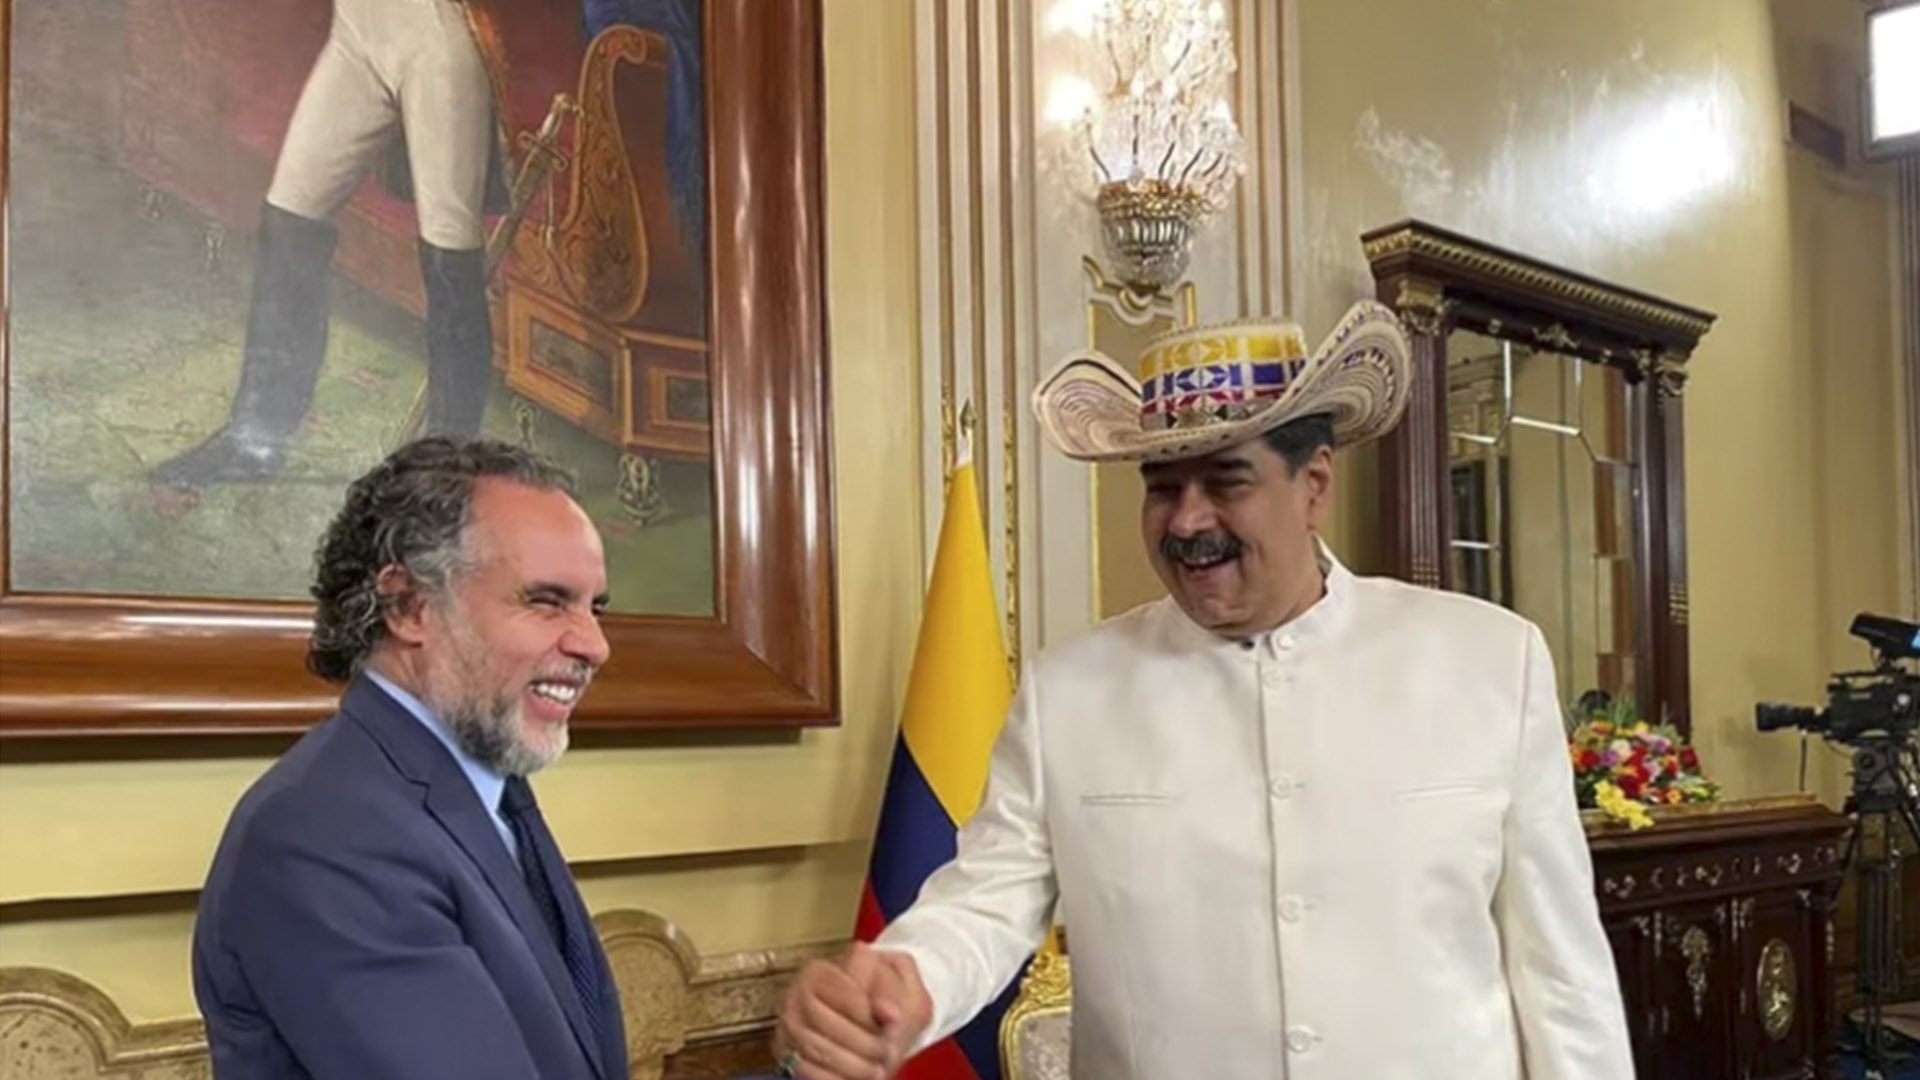 “Petro dijo de forma tajante que no iba a importar gas de Venezuela”: Lo que reveló el embajador Armando Benedetti